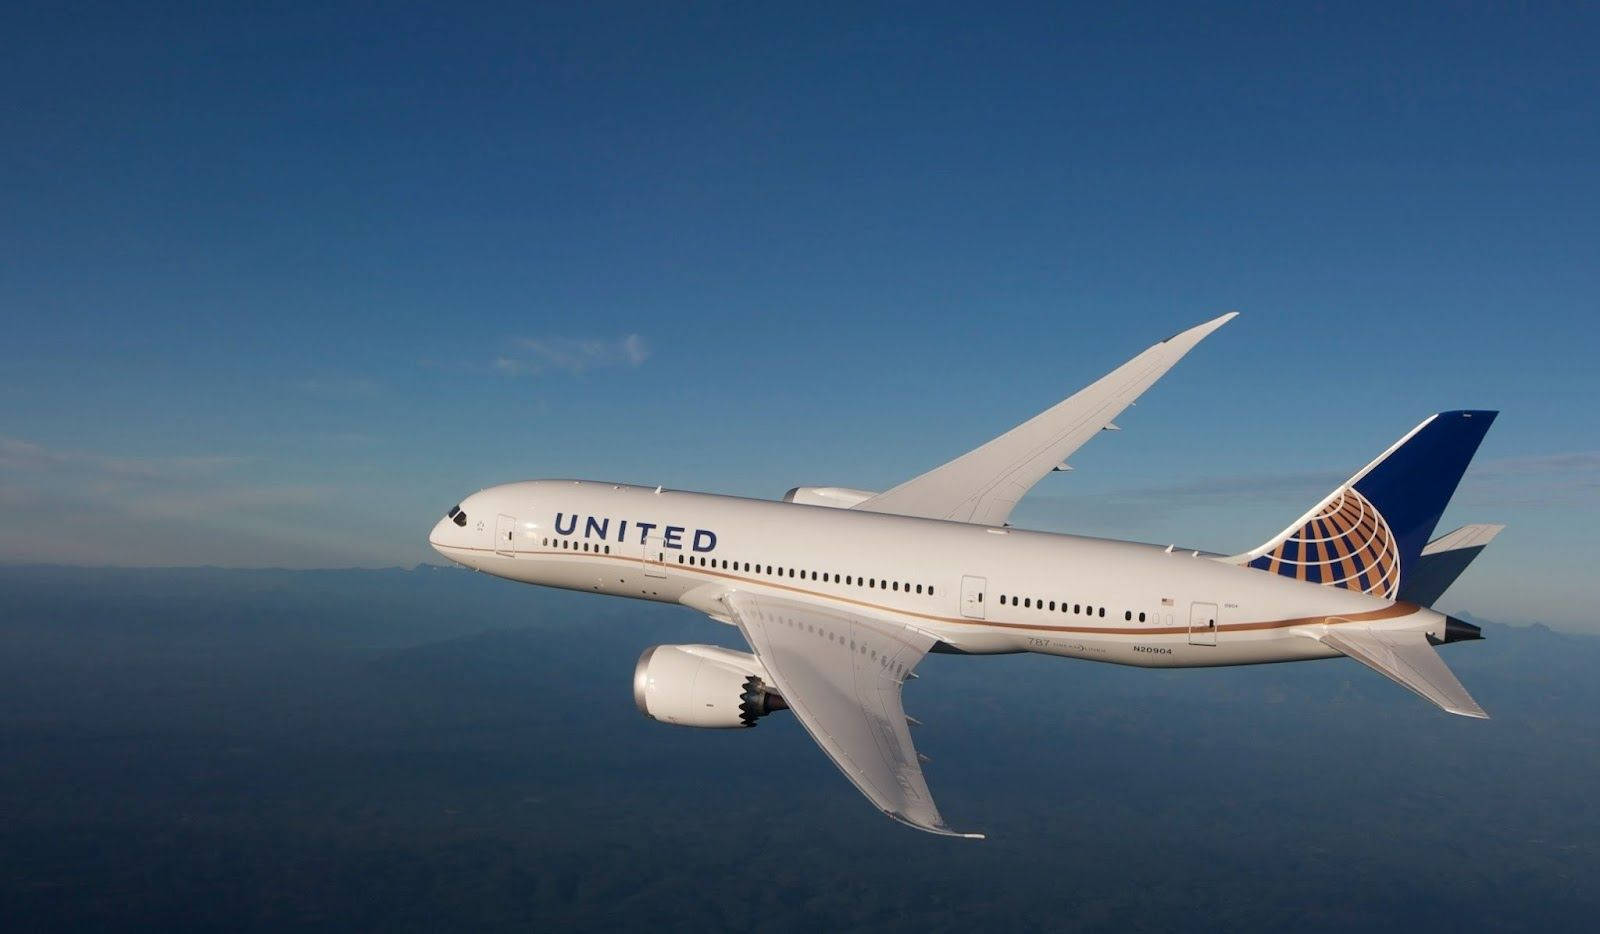 Aviónde United Volando En Un Cielo Azul. Fondo de pantalla